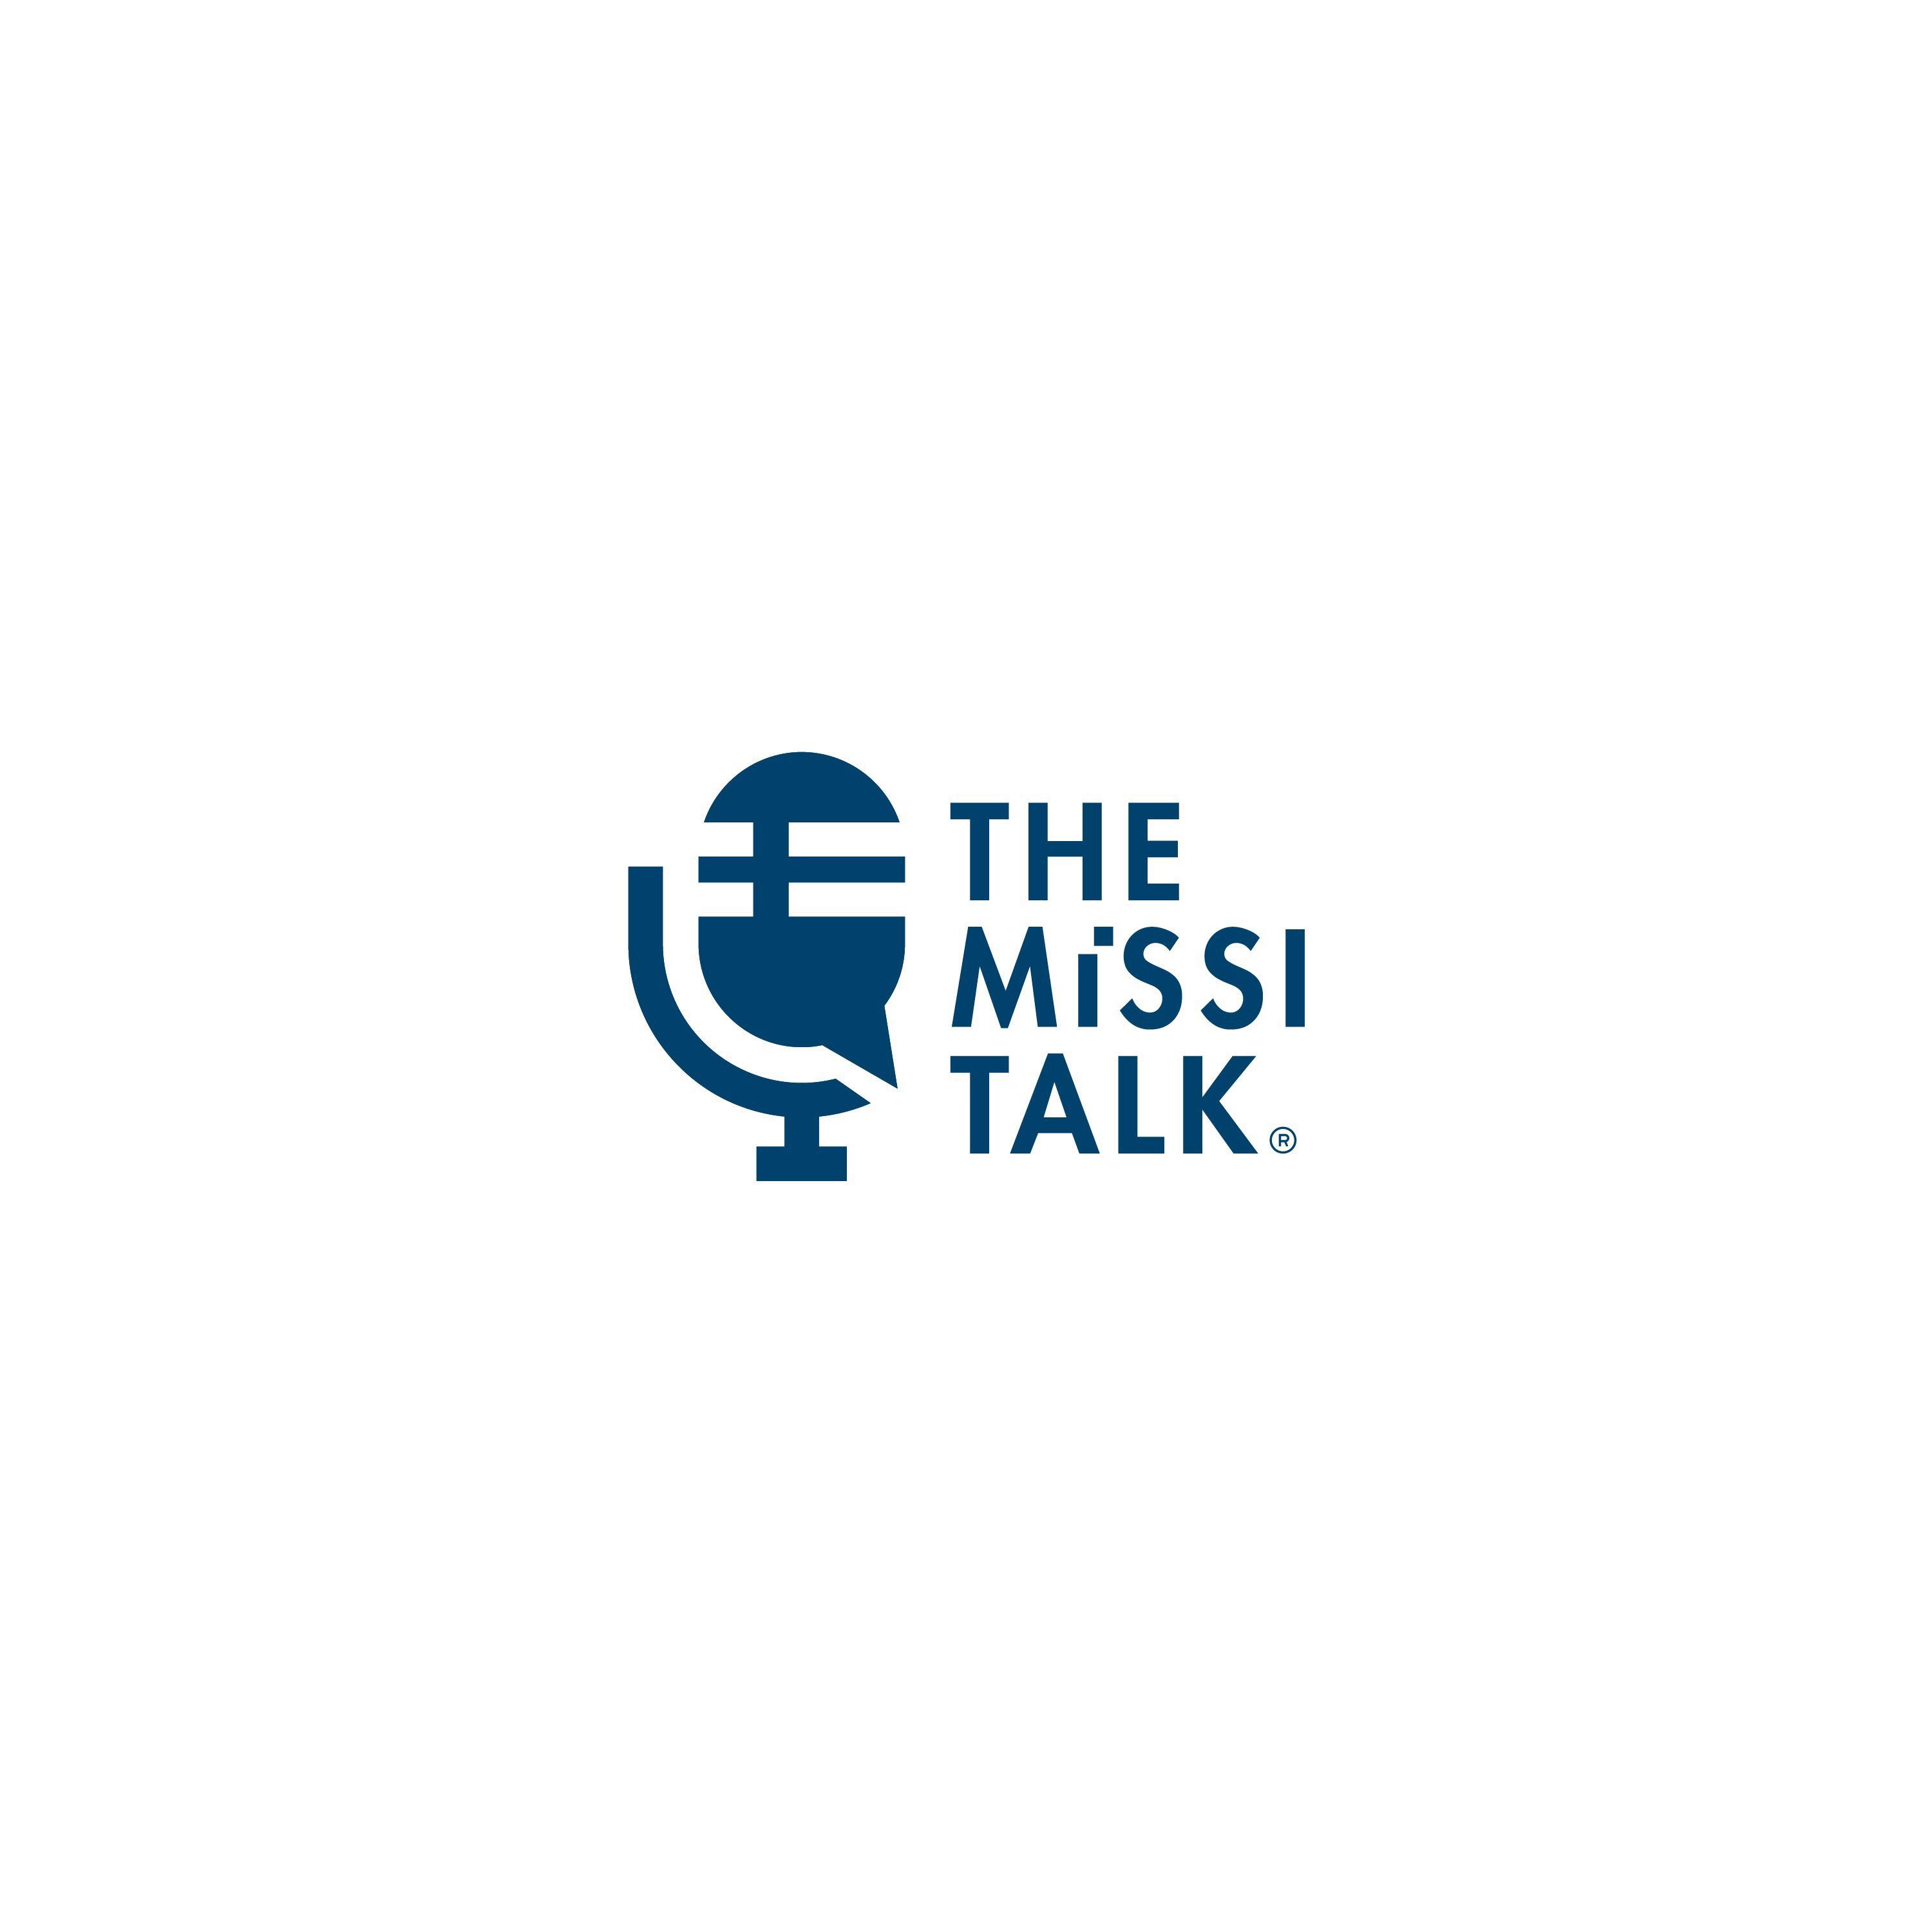 The Missi Talk